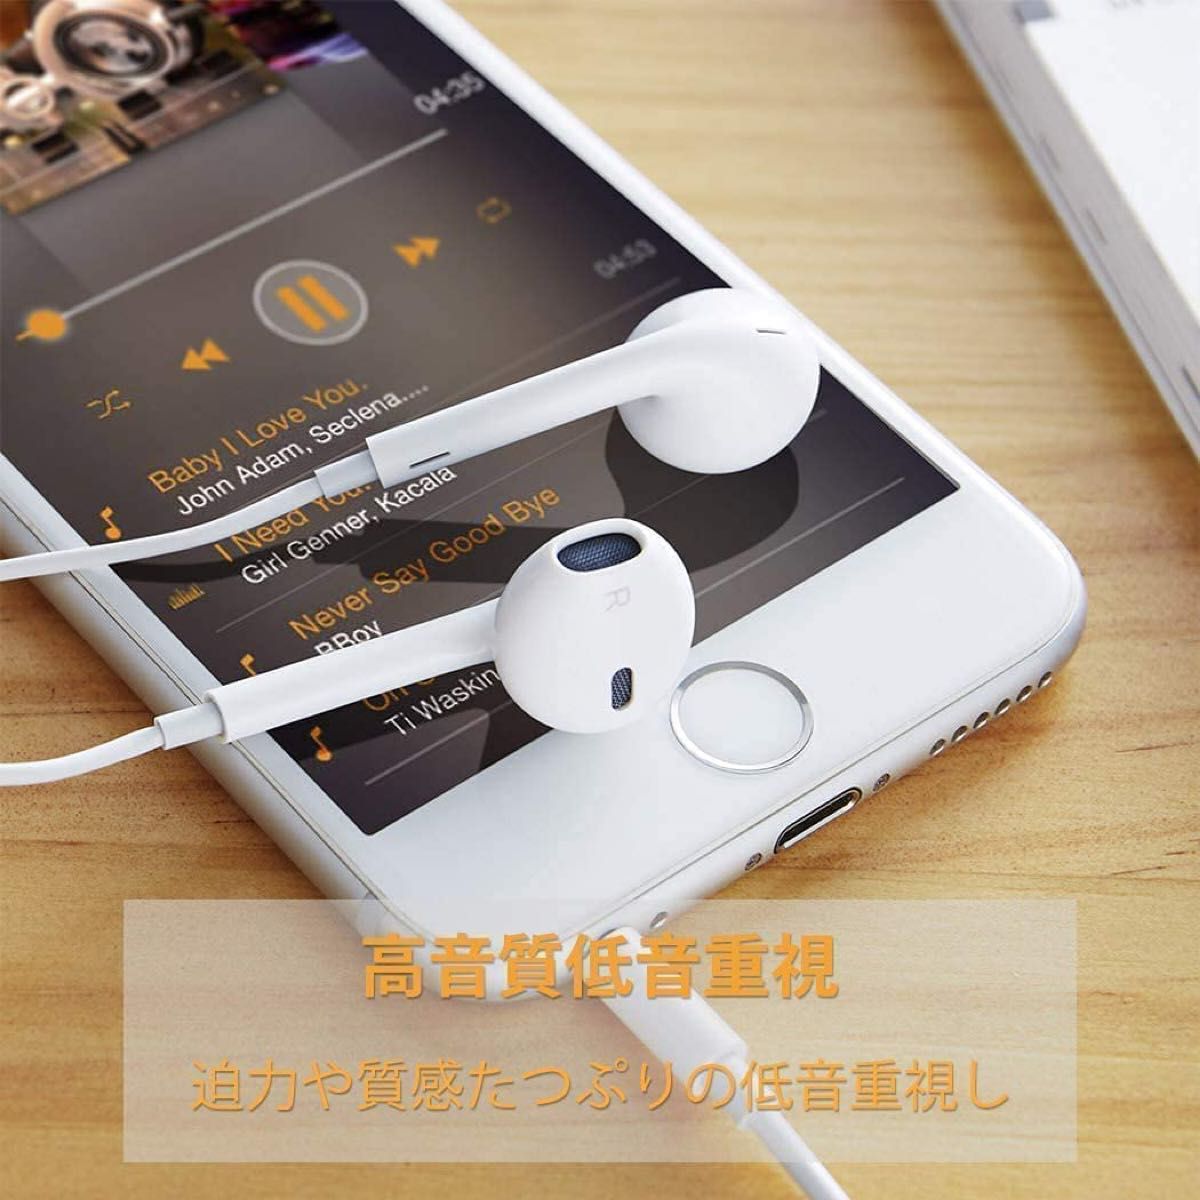 iPhoneイヤホン 有線 イヤフォン アイフォンイヤホン 重低音 マイク付き 通話対応 音量調整 iPad/iPod対応